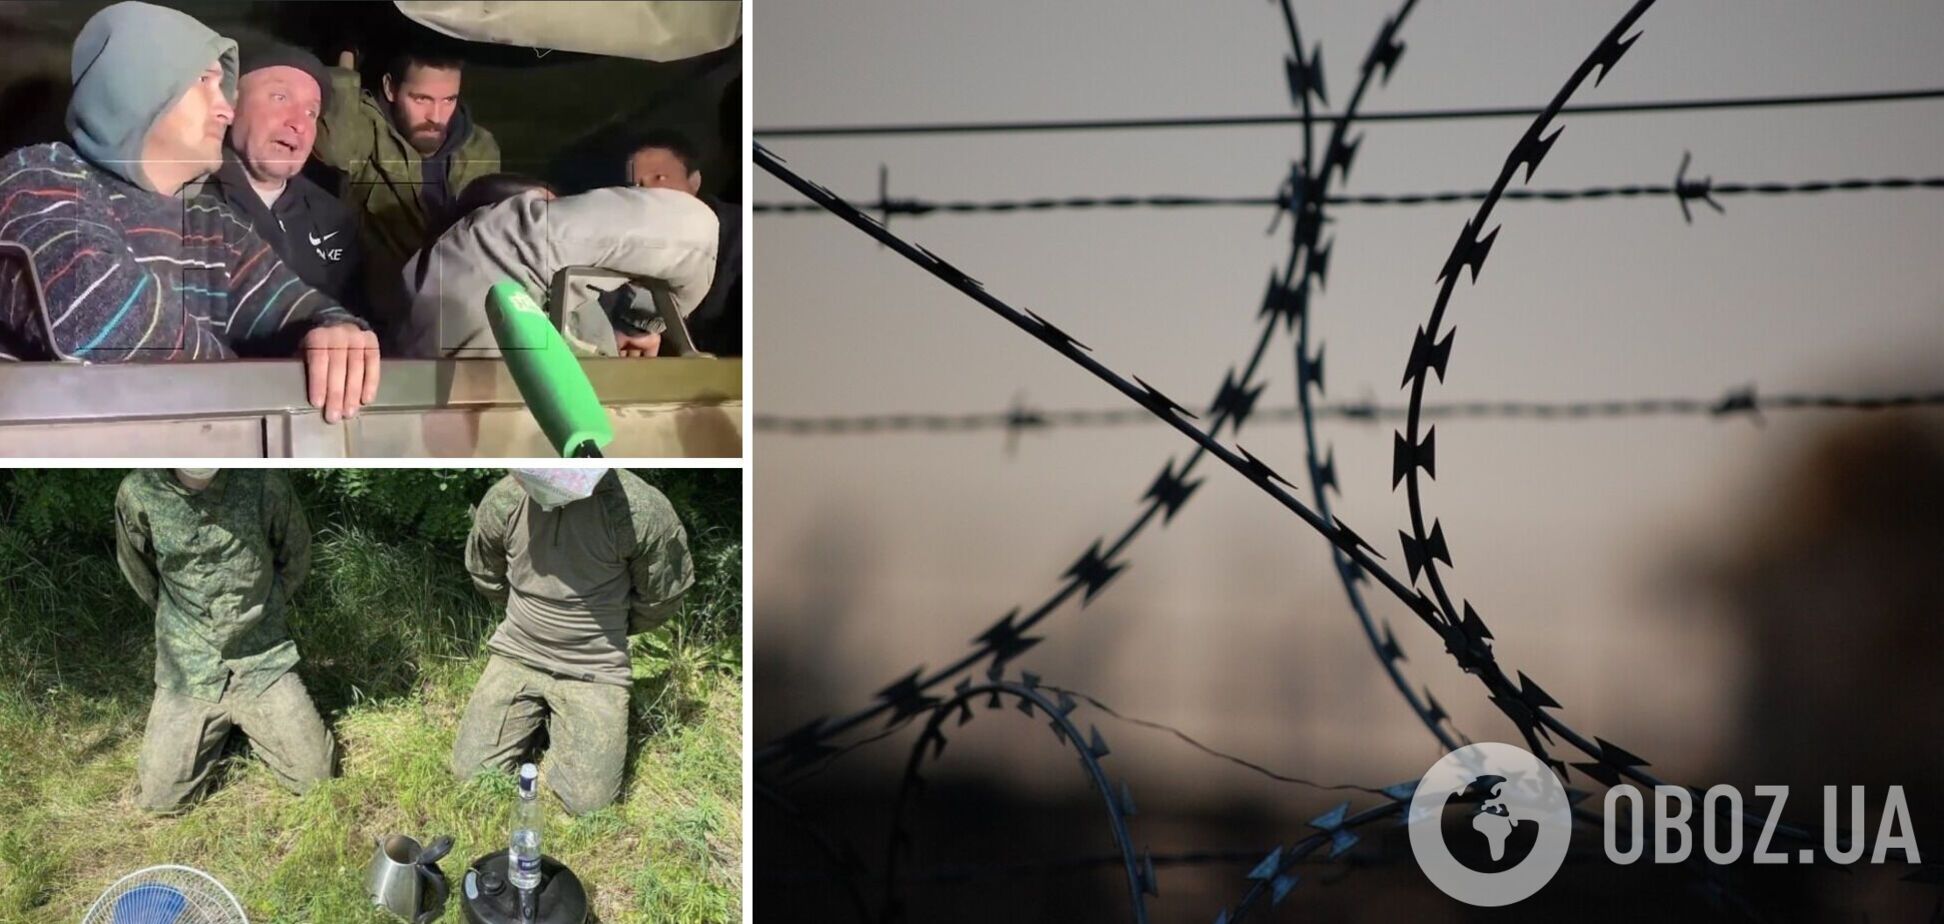 Пропагандист из РФ хотел снять сюжет о 'пытках пленных' оккупантов в Украине, но все пошло не так. Видео